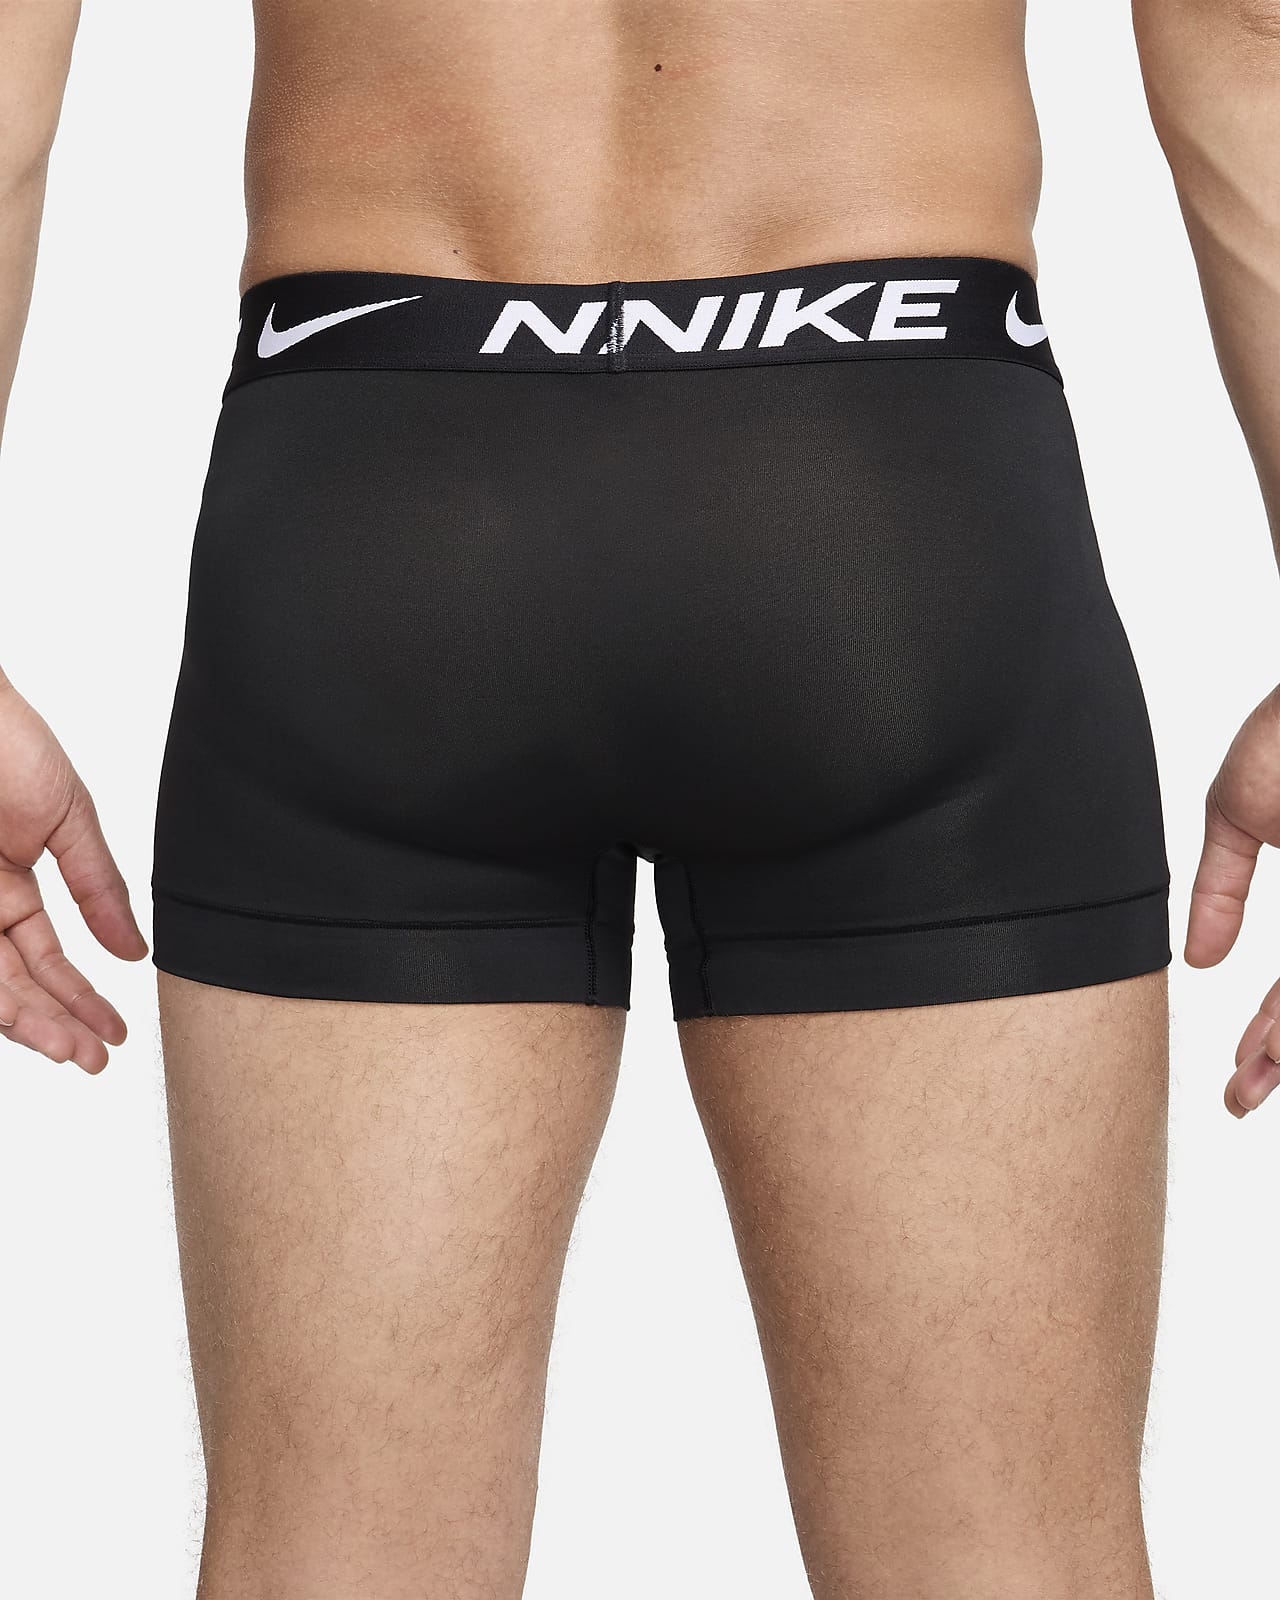 NIKE Underwear Trunk (3 Pack) electric algae/wolf grey/black